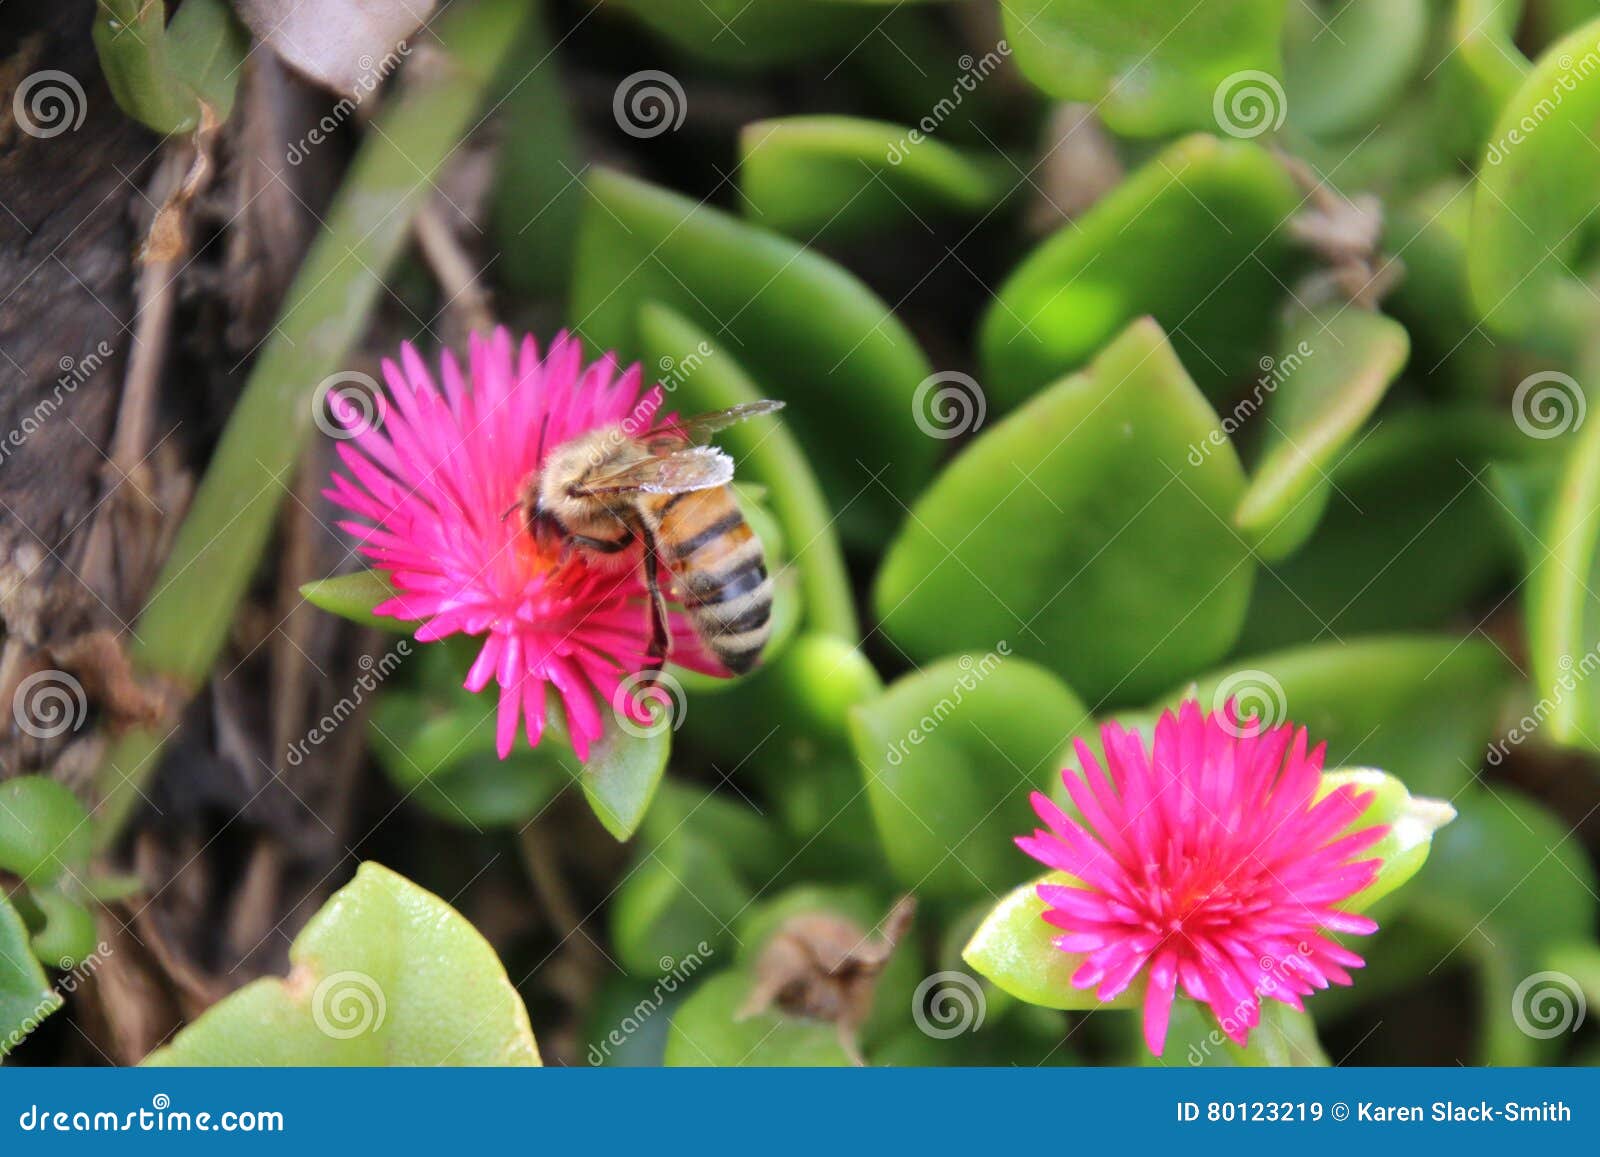 bee on heartleaf ice plant